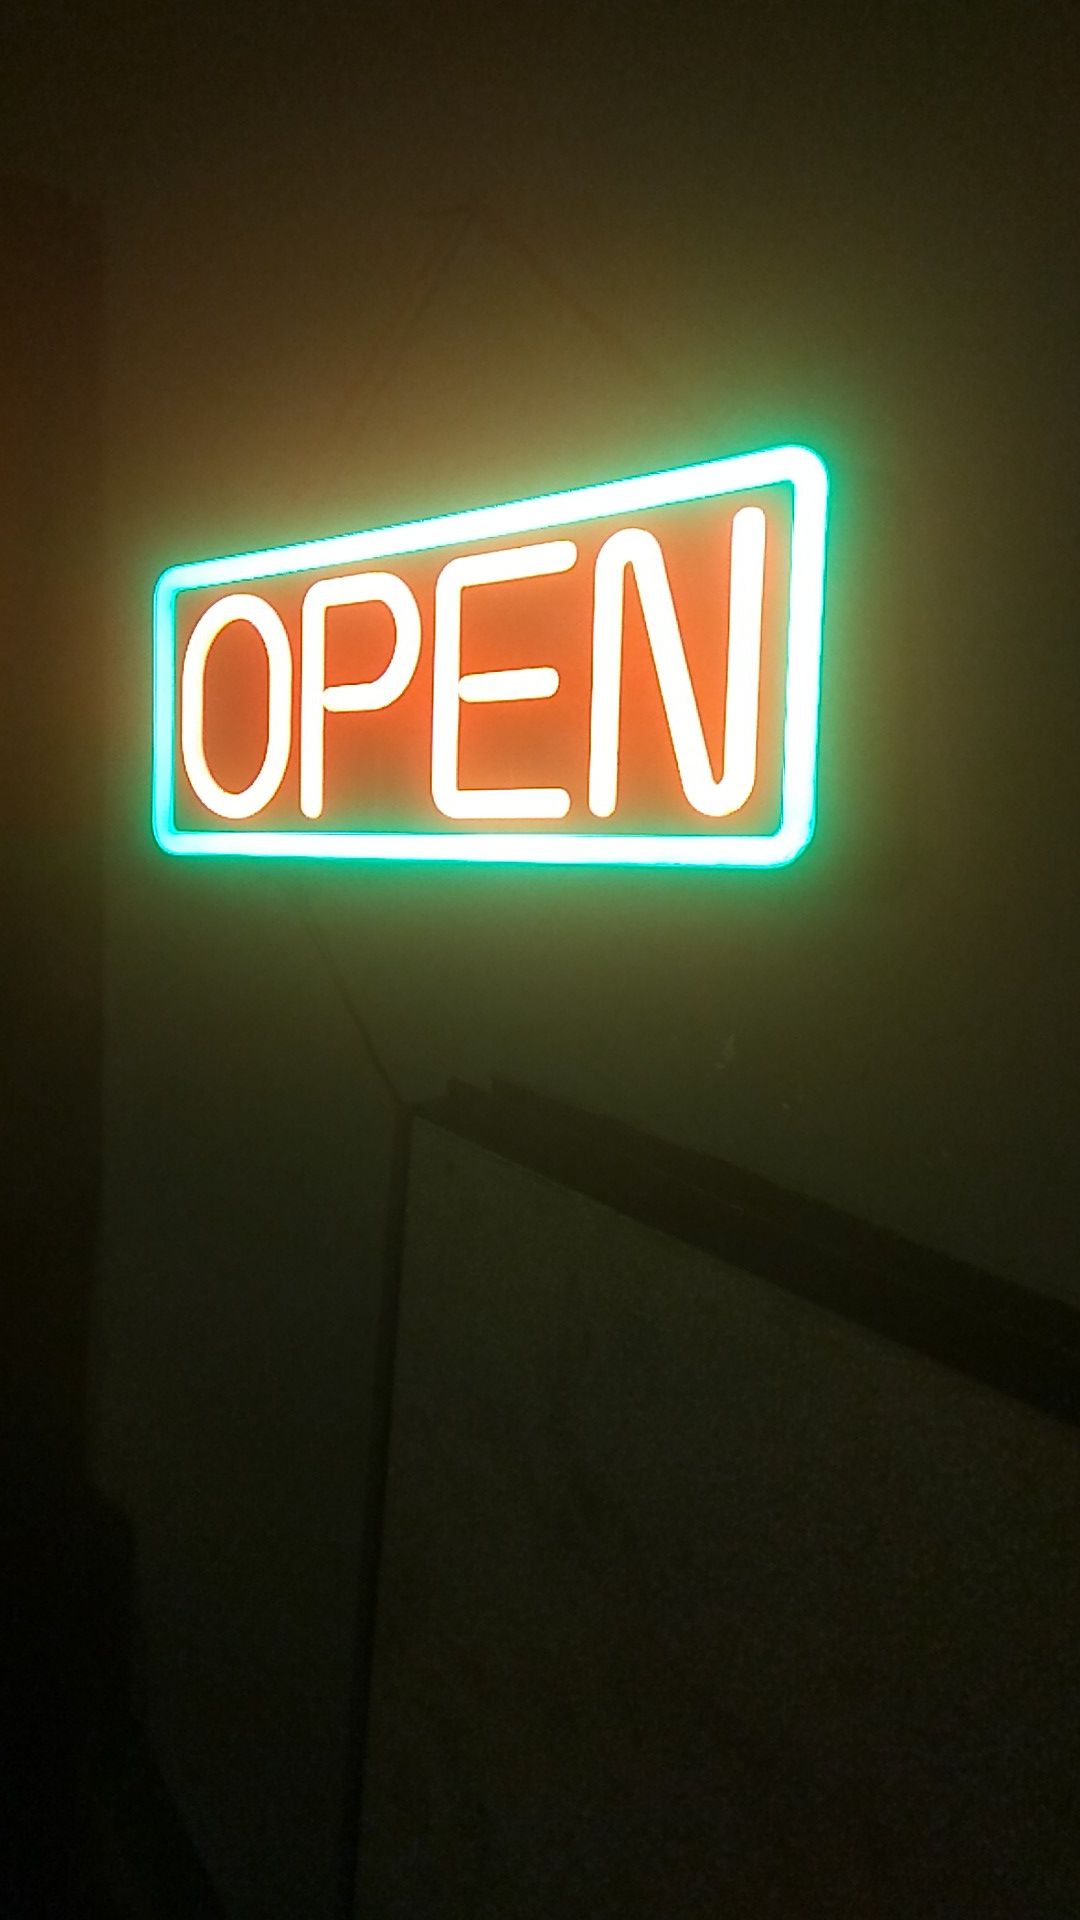 Neon open sign